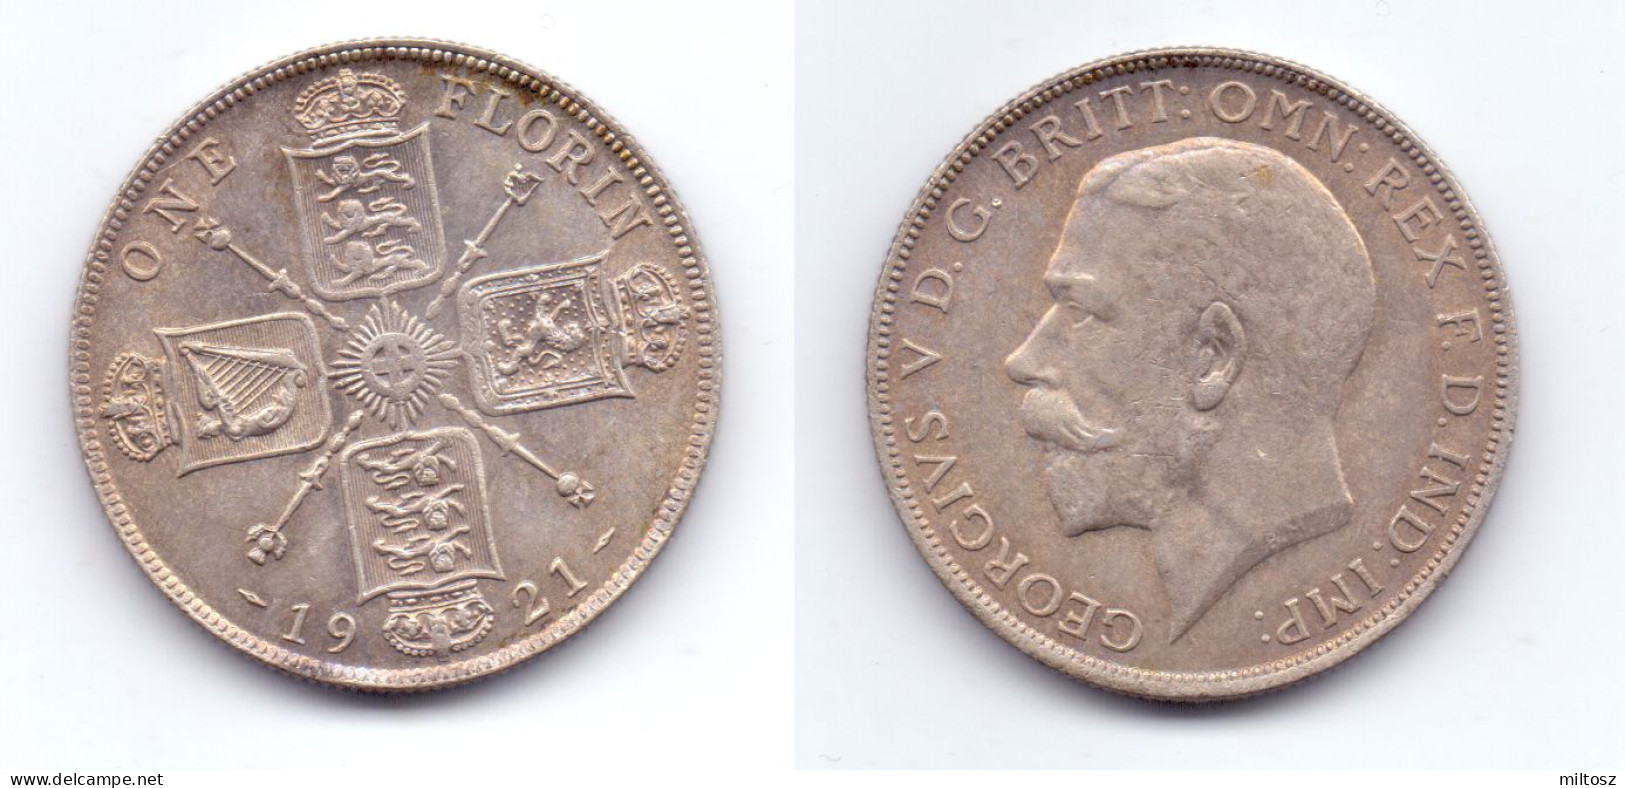 Great Britain 1 Florin 1921 - J. 1 Florin / 2 Shillings